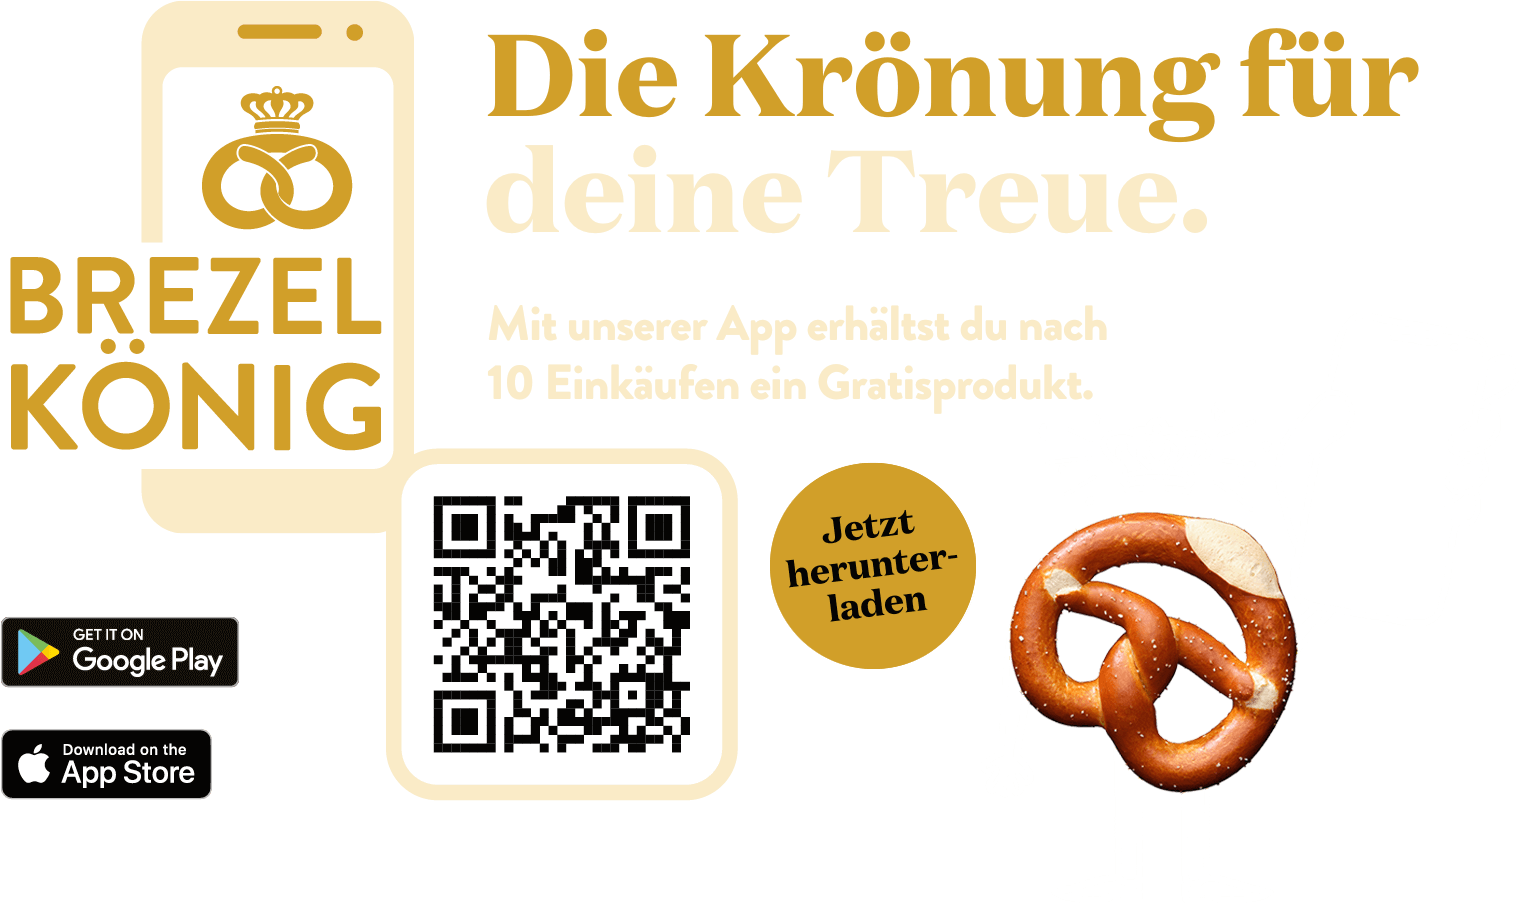 Brezelkönig App